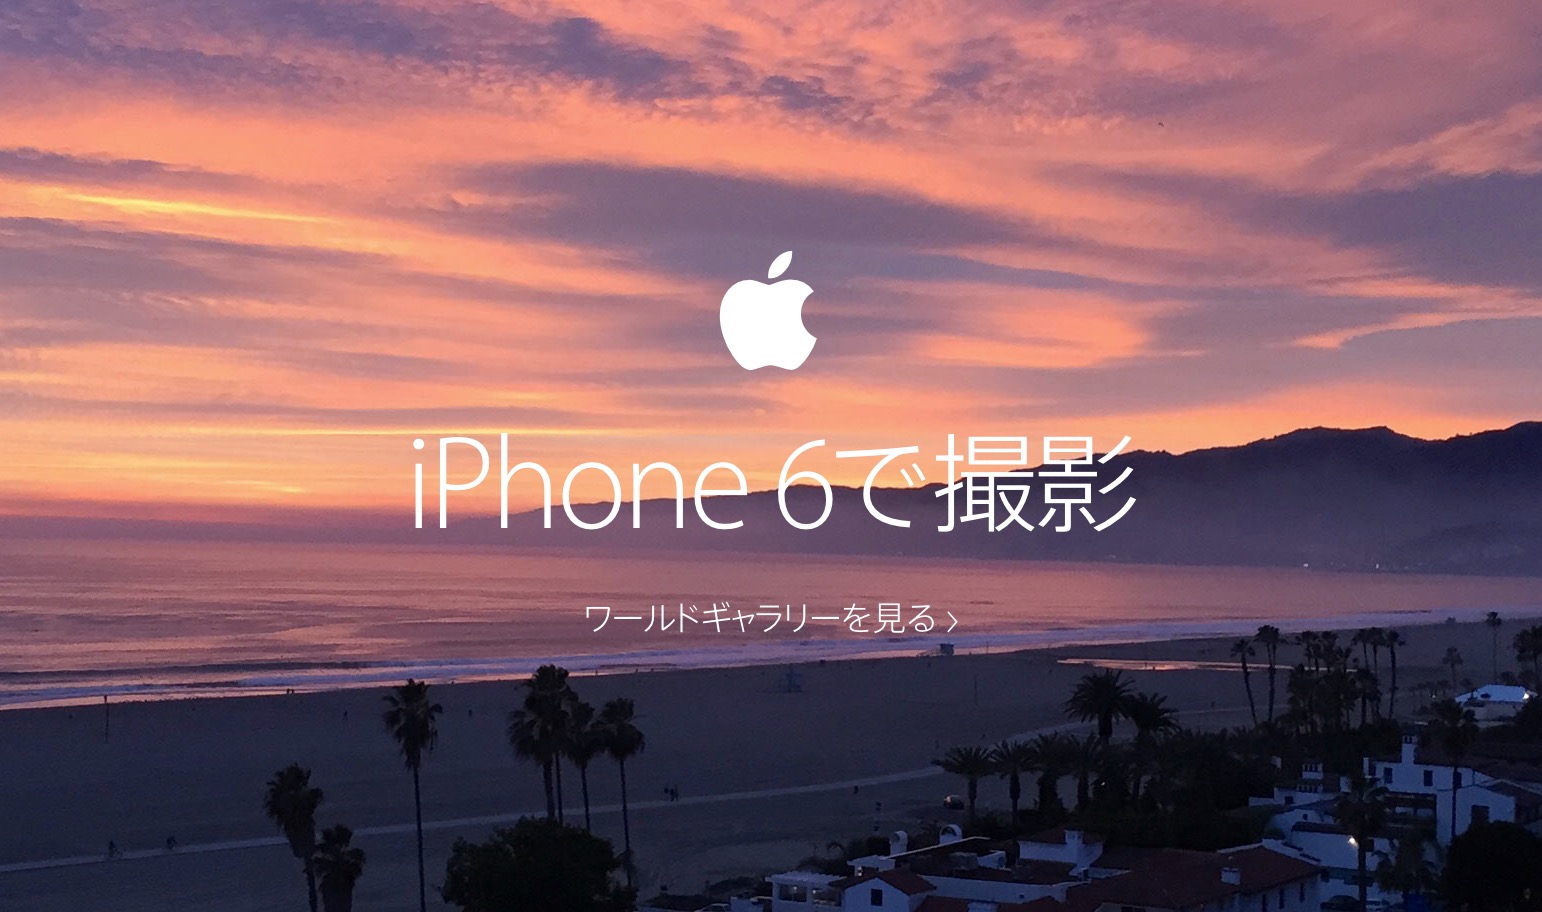 Apple Iphone 6 で撮影した写真を紹介する Iphone 6で撮影 のページを公開 気になる 記になる